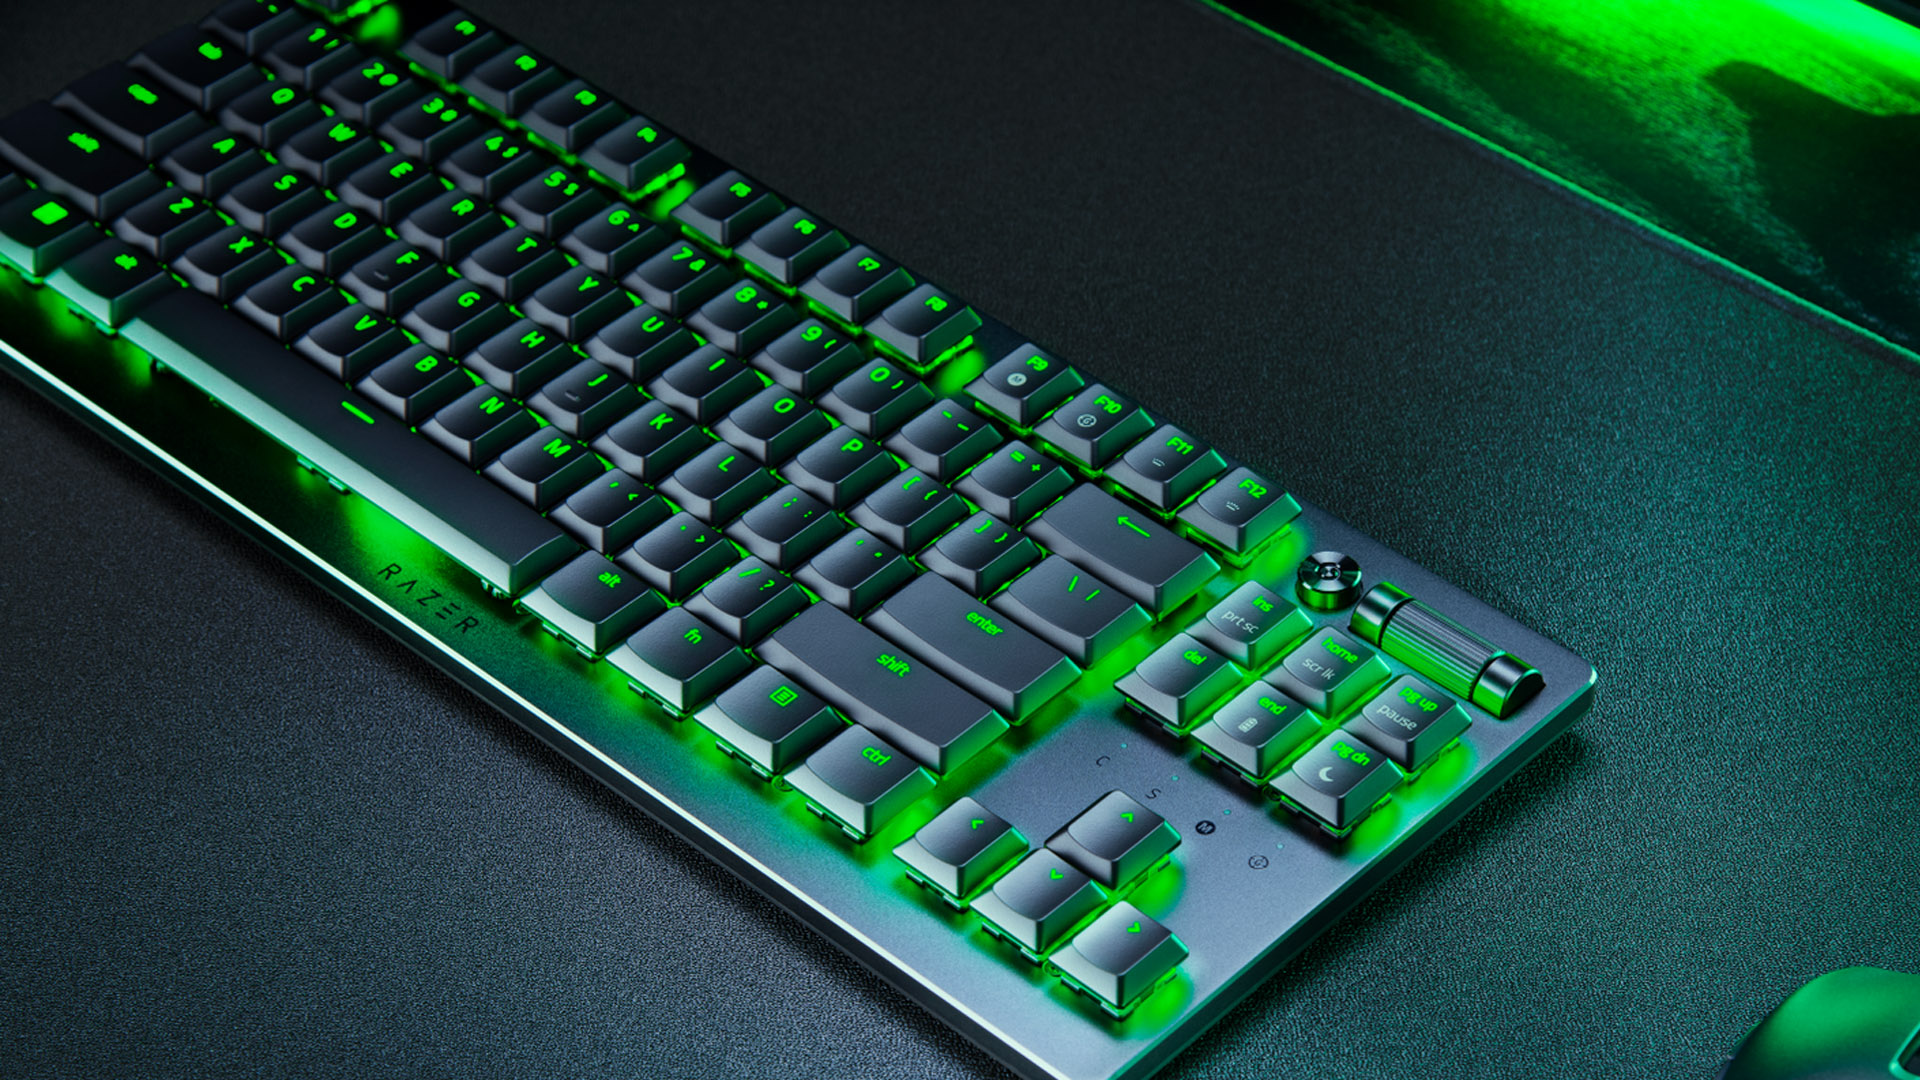 Razer Deathstalker V2 Pro TKL keyboard with green lighting